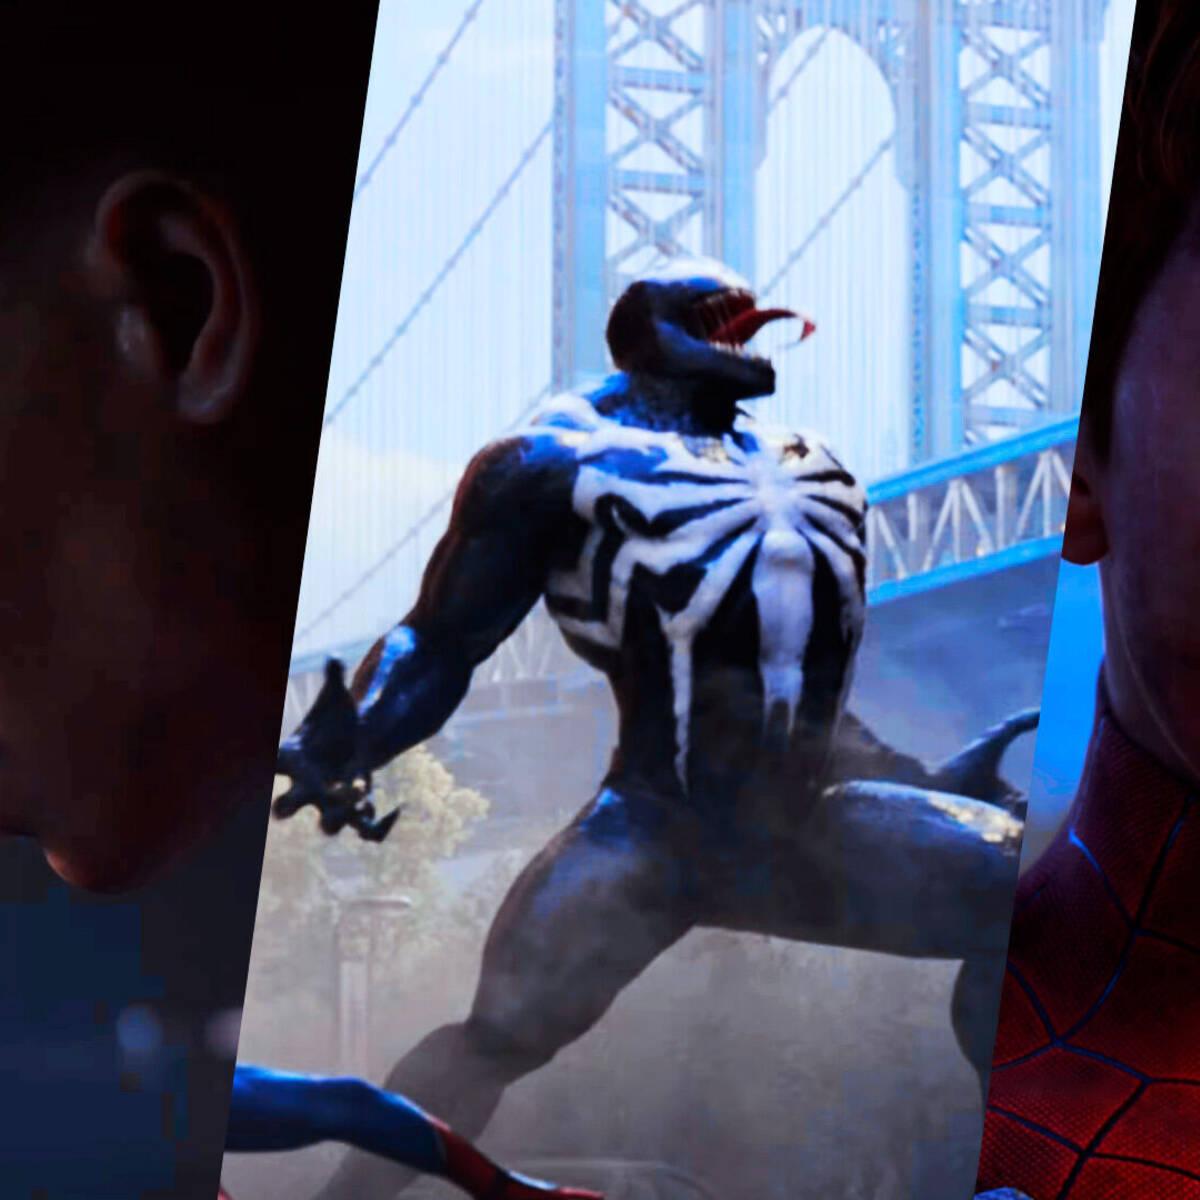 Marvel's Spider-Man 2 estrena su épico tráiler CGI que te pondrá